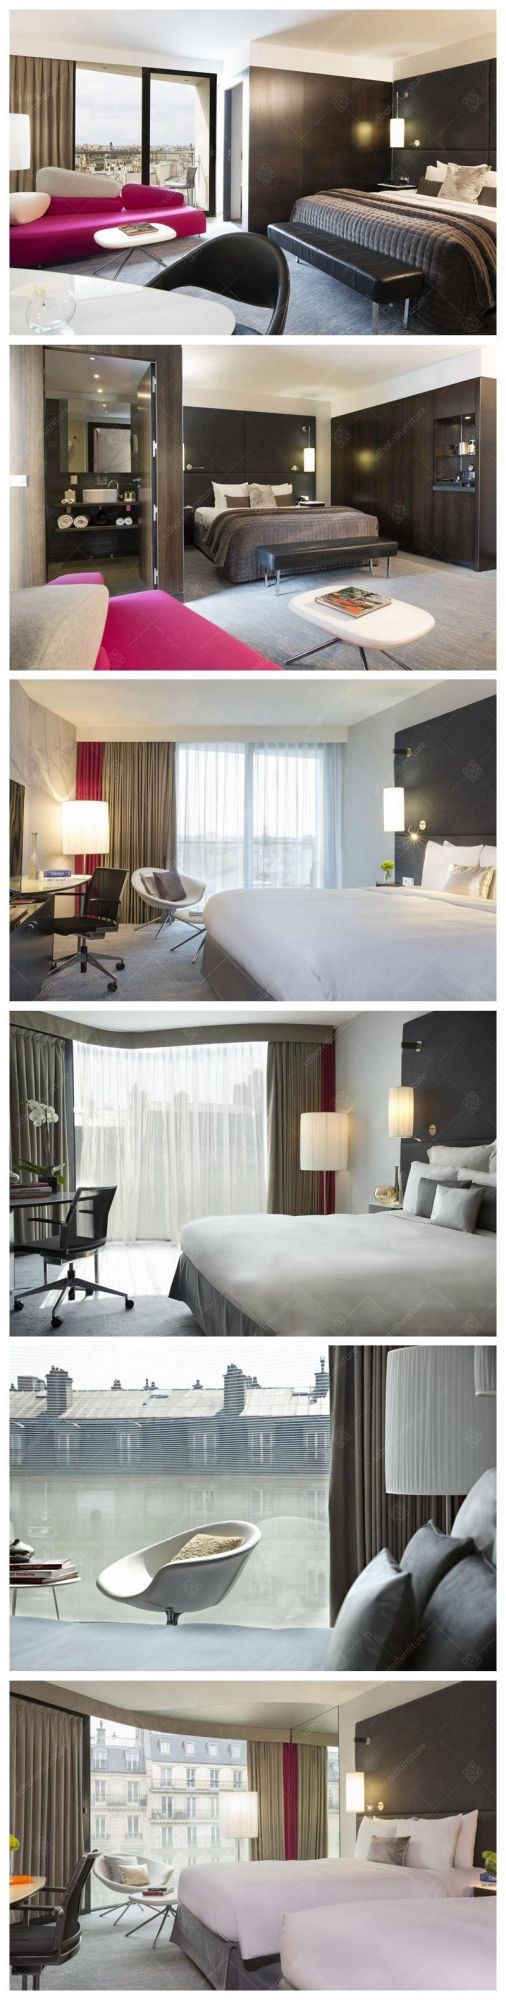 Modern Luxury Design Commercial Hotel King Size Bedroom Furniture Sets